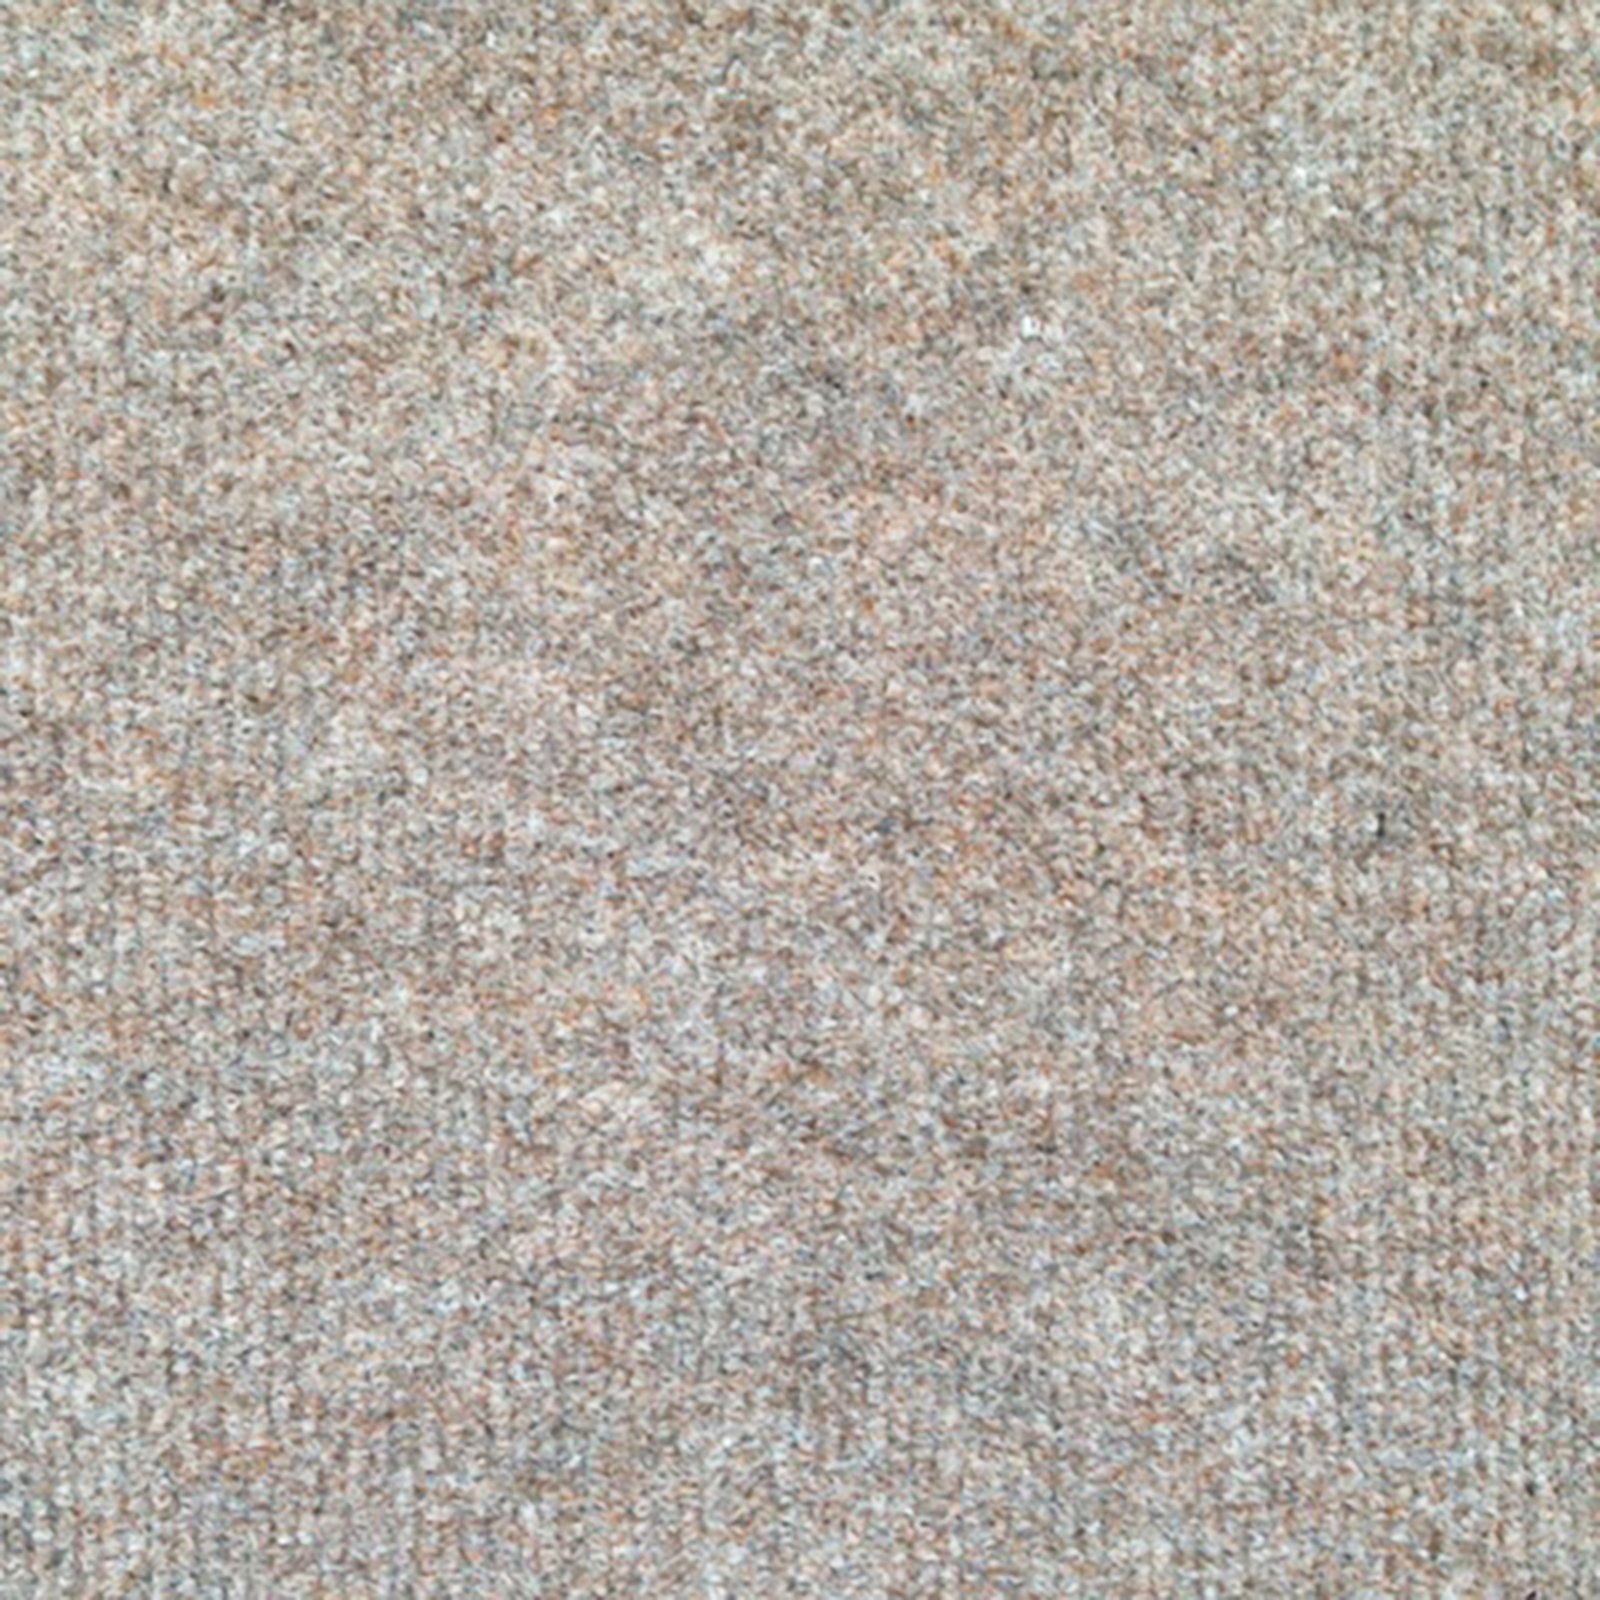 Teppichboden - beige - 4 Meter breit | Online bei ROLLER kaufen